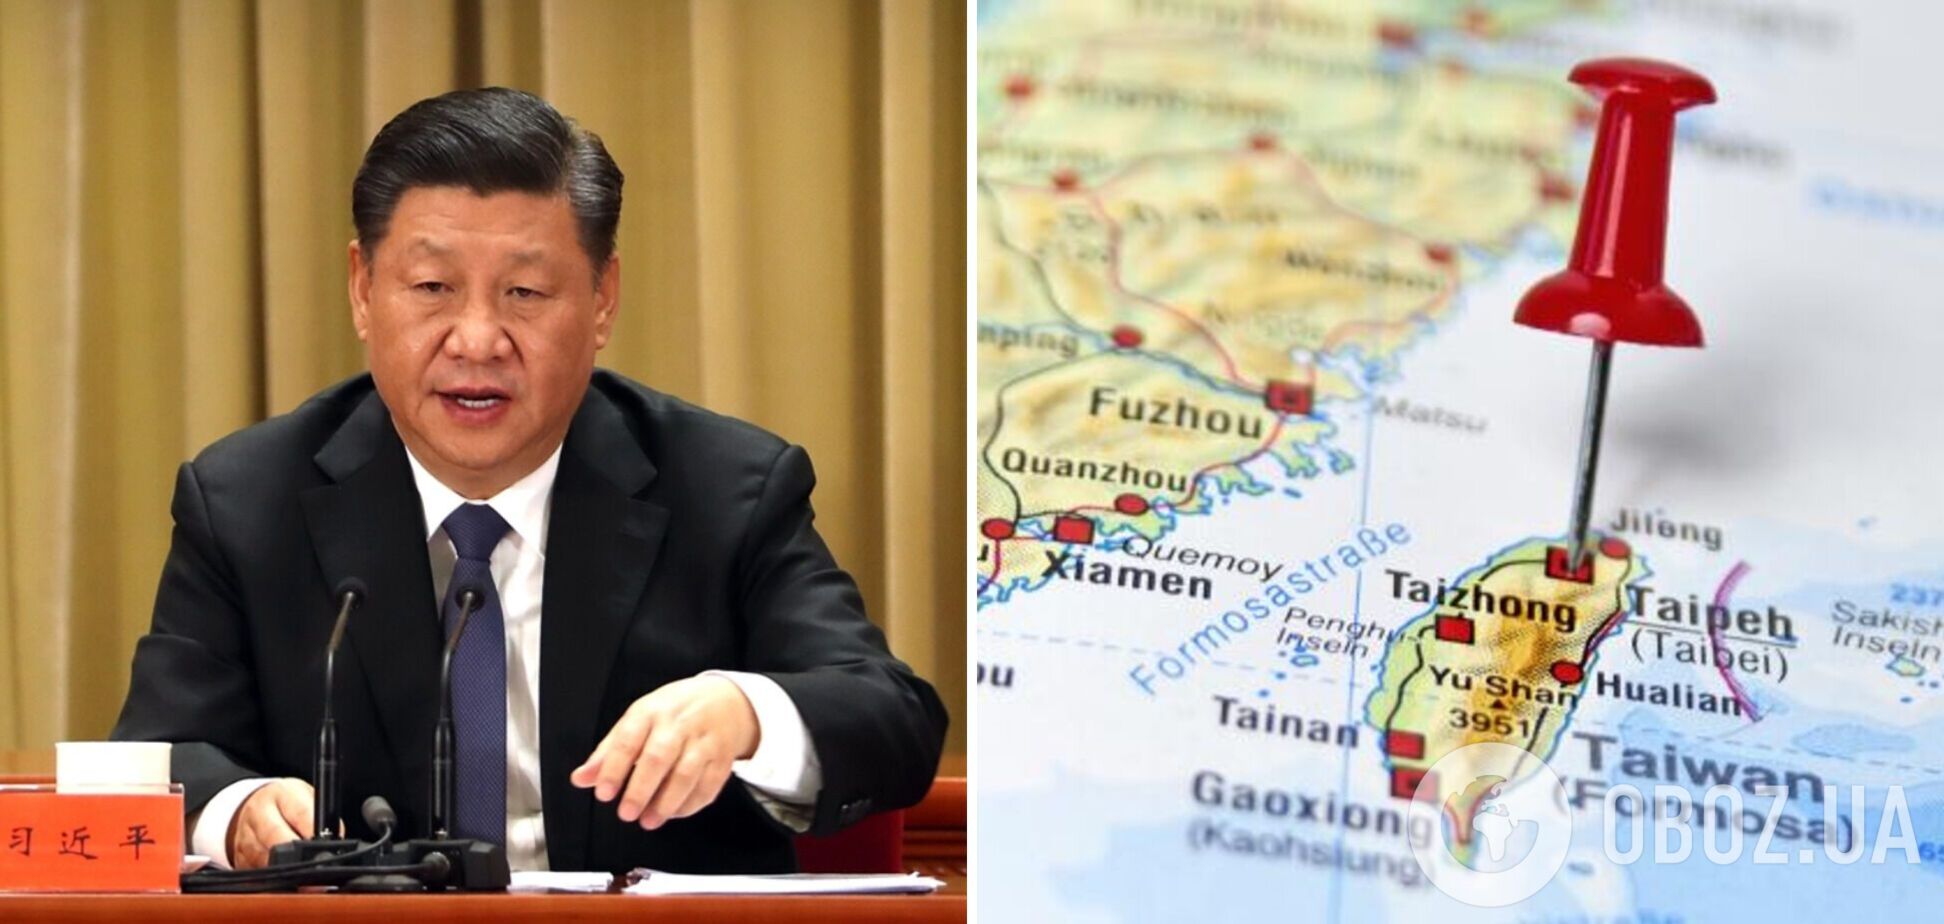 ЦРУ получило данные о подготовке Китая к захвату Тайваня: Си Цзиньпин дал время до 2027 года